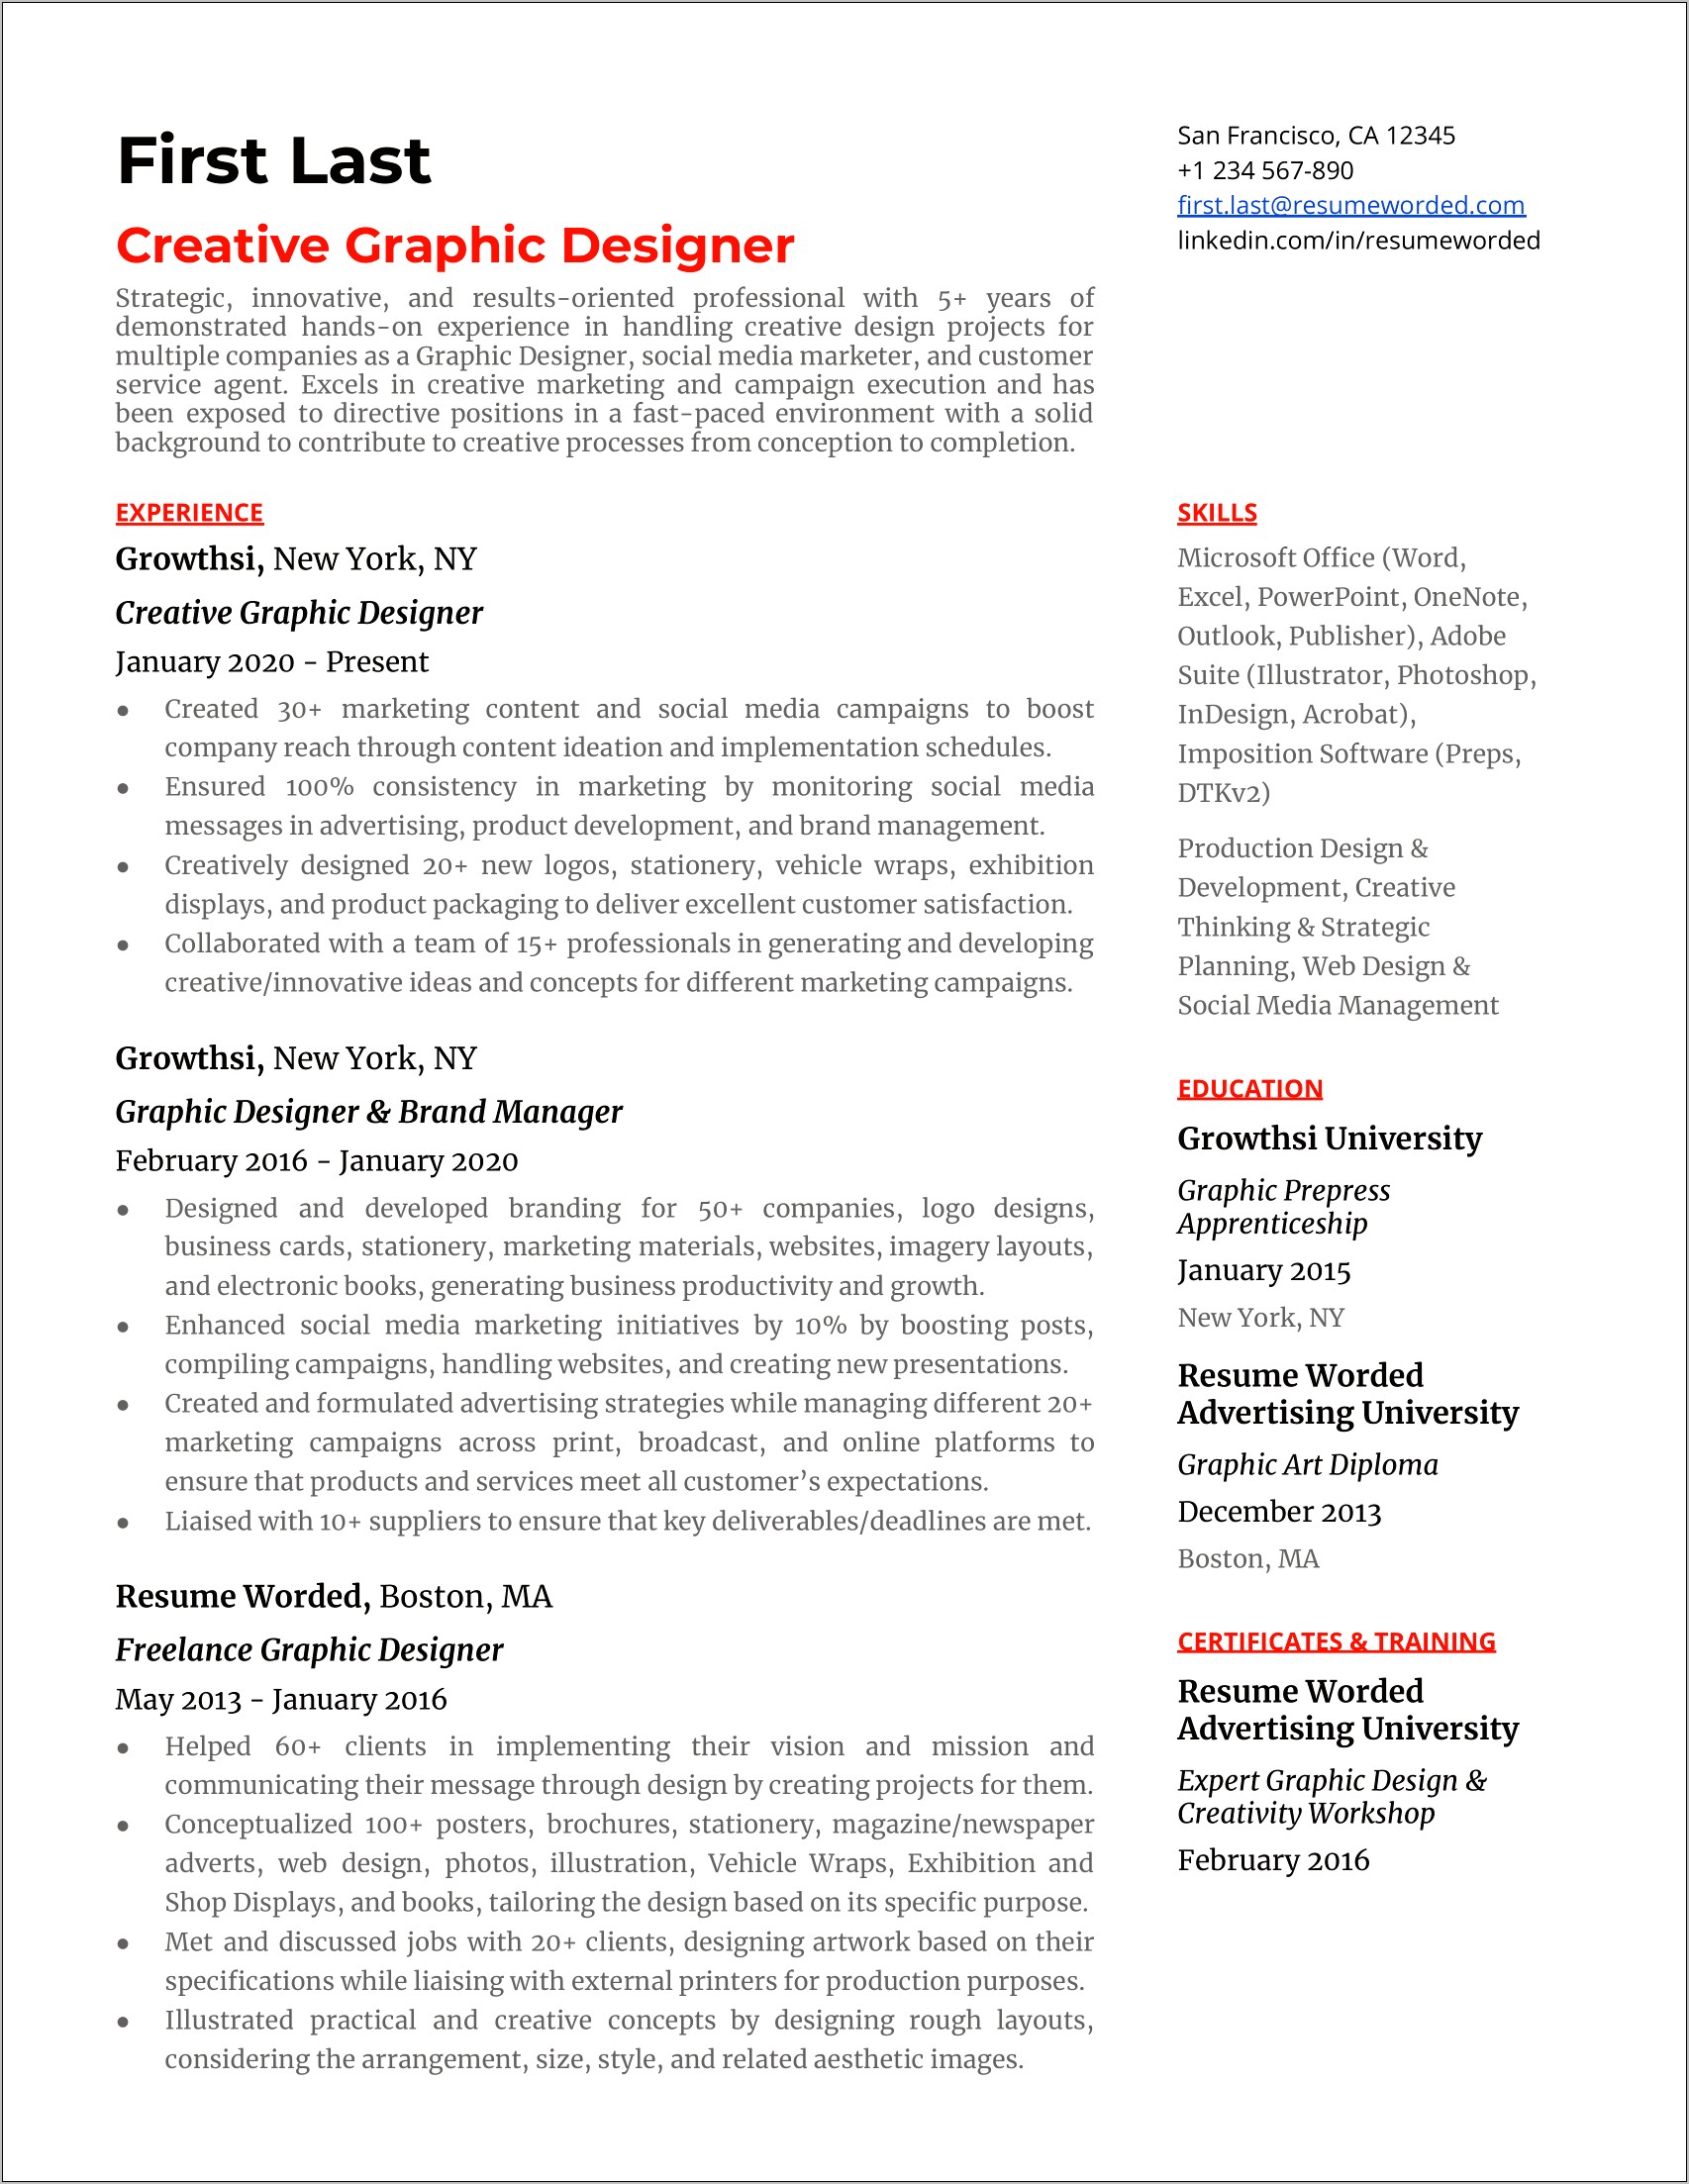 Adobe Campaign Job Description Resume